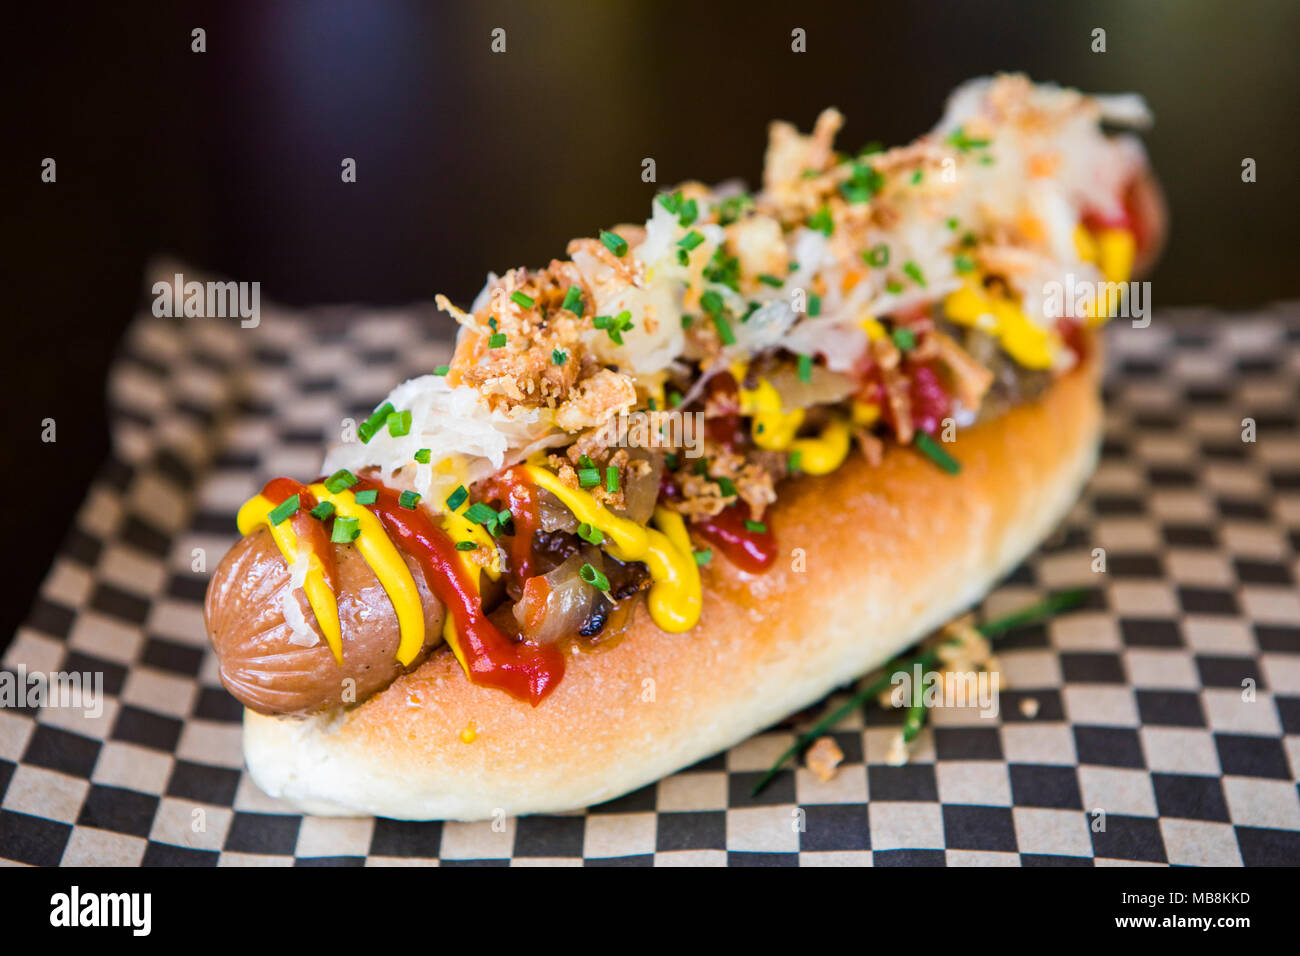 Street cibo vegan hot dog in bap con ketchup, senape e cipolle. Foto Stock